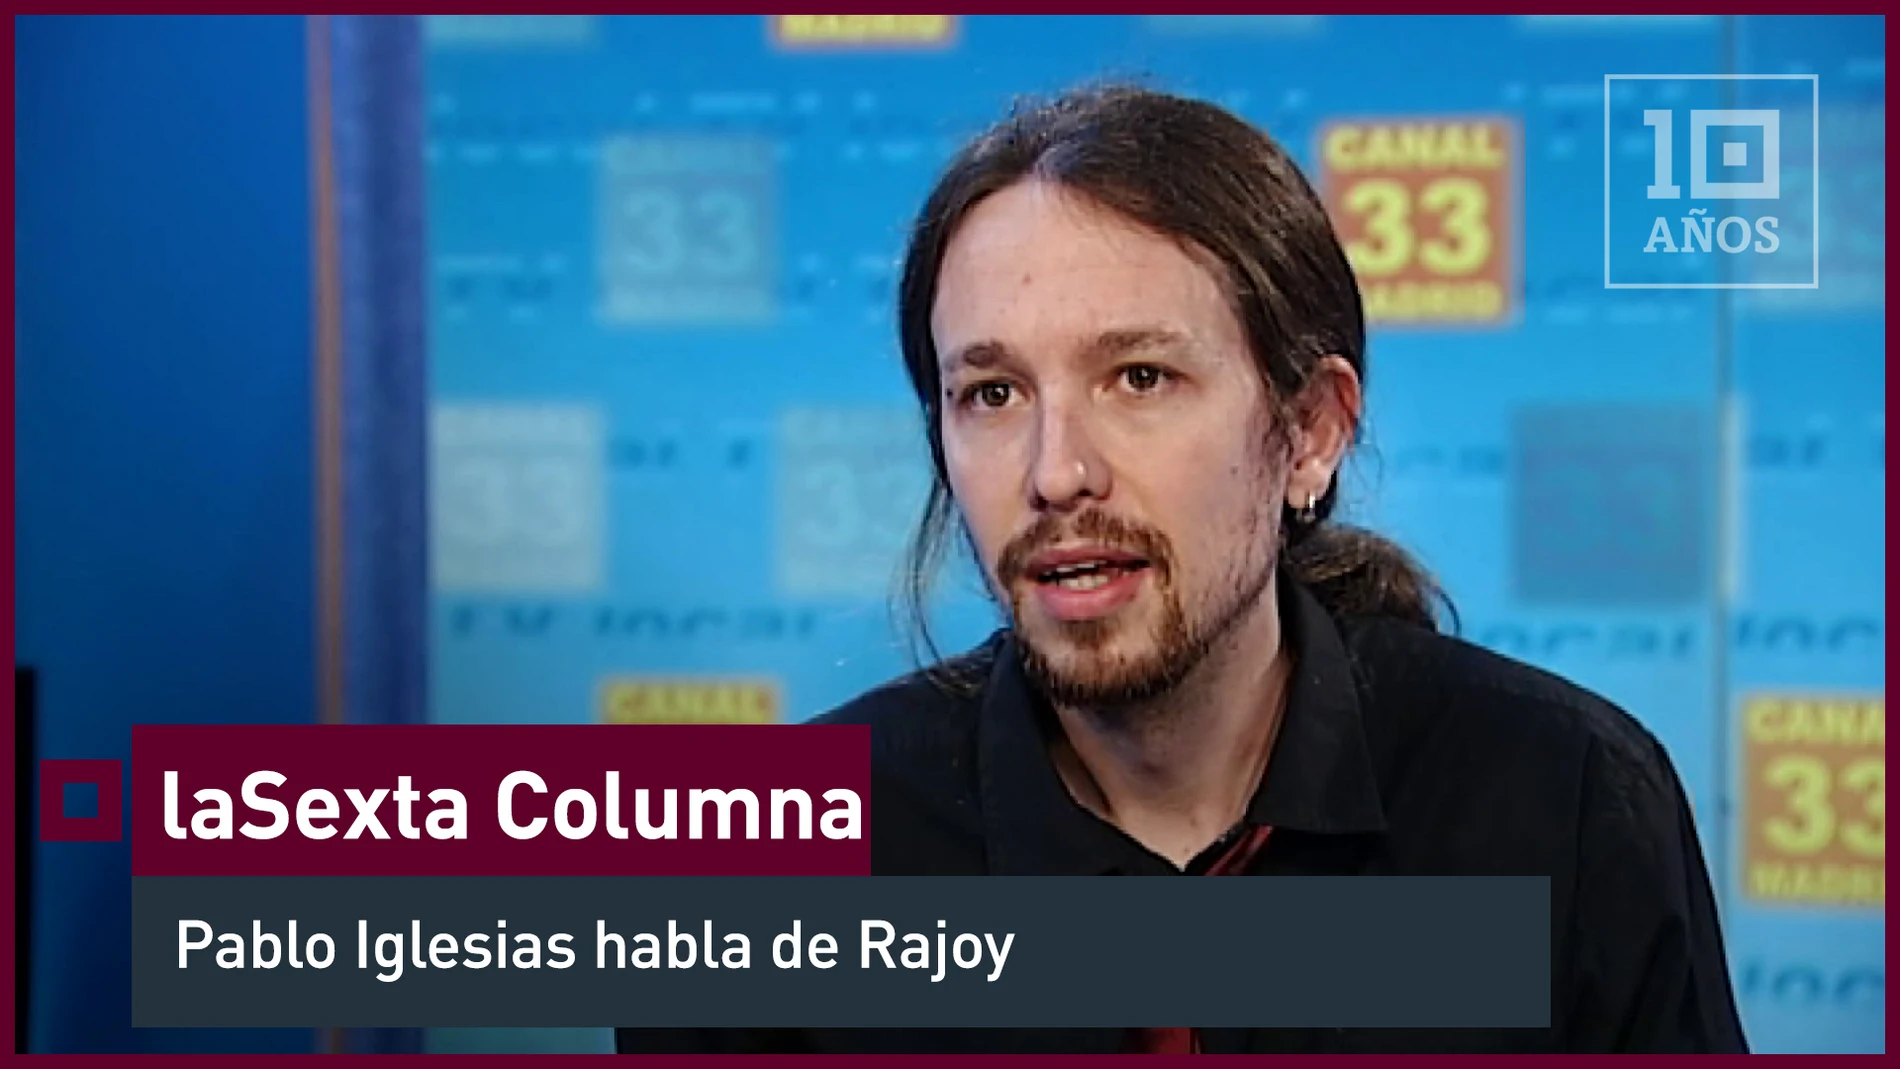 2012. El entonces presentador de "La Tuerka", Pablo Iglesias, valora a Rajoy